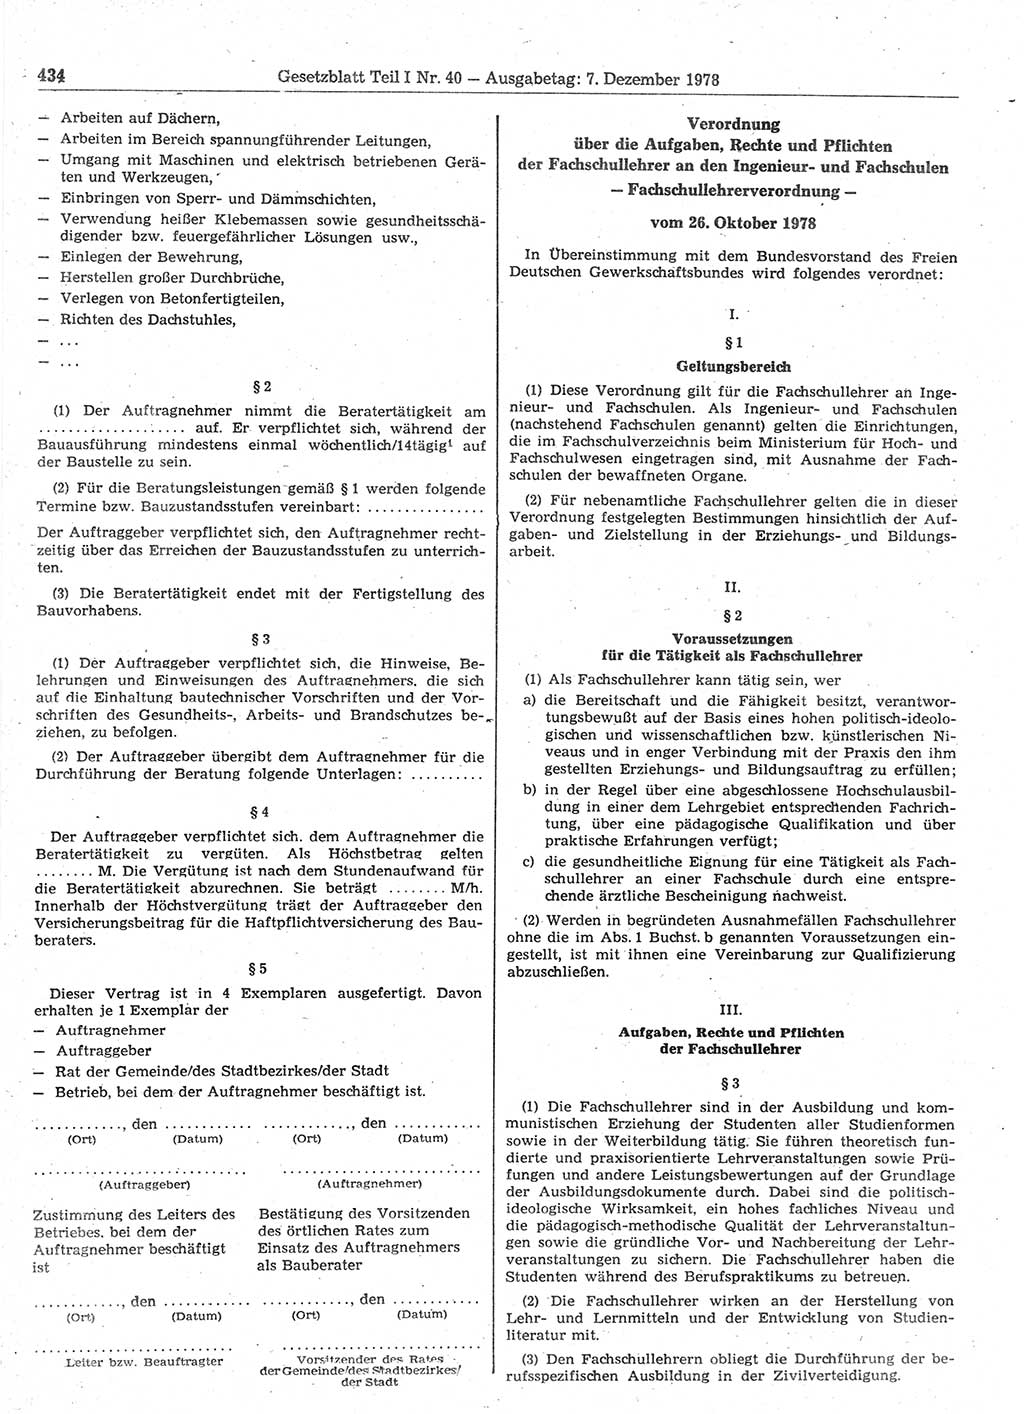 Gesetzblatt (GBl.) der Deutschen Demokratischen Republik (DDR) Teil Ⅰ 1978, Seite 434 (GBl. DDR Ⅰ 1978, S. 434)